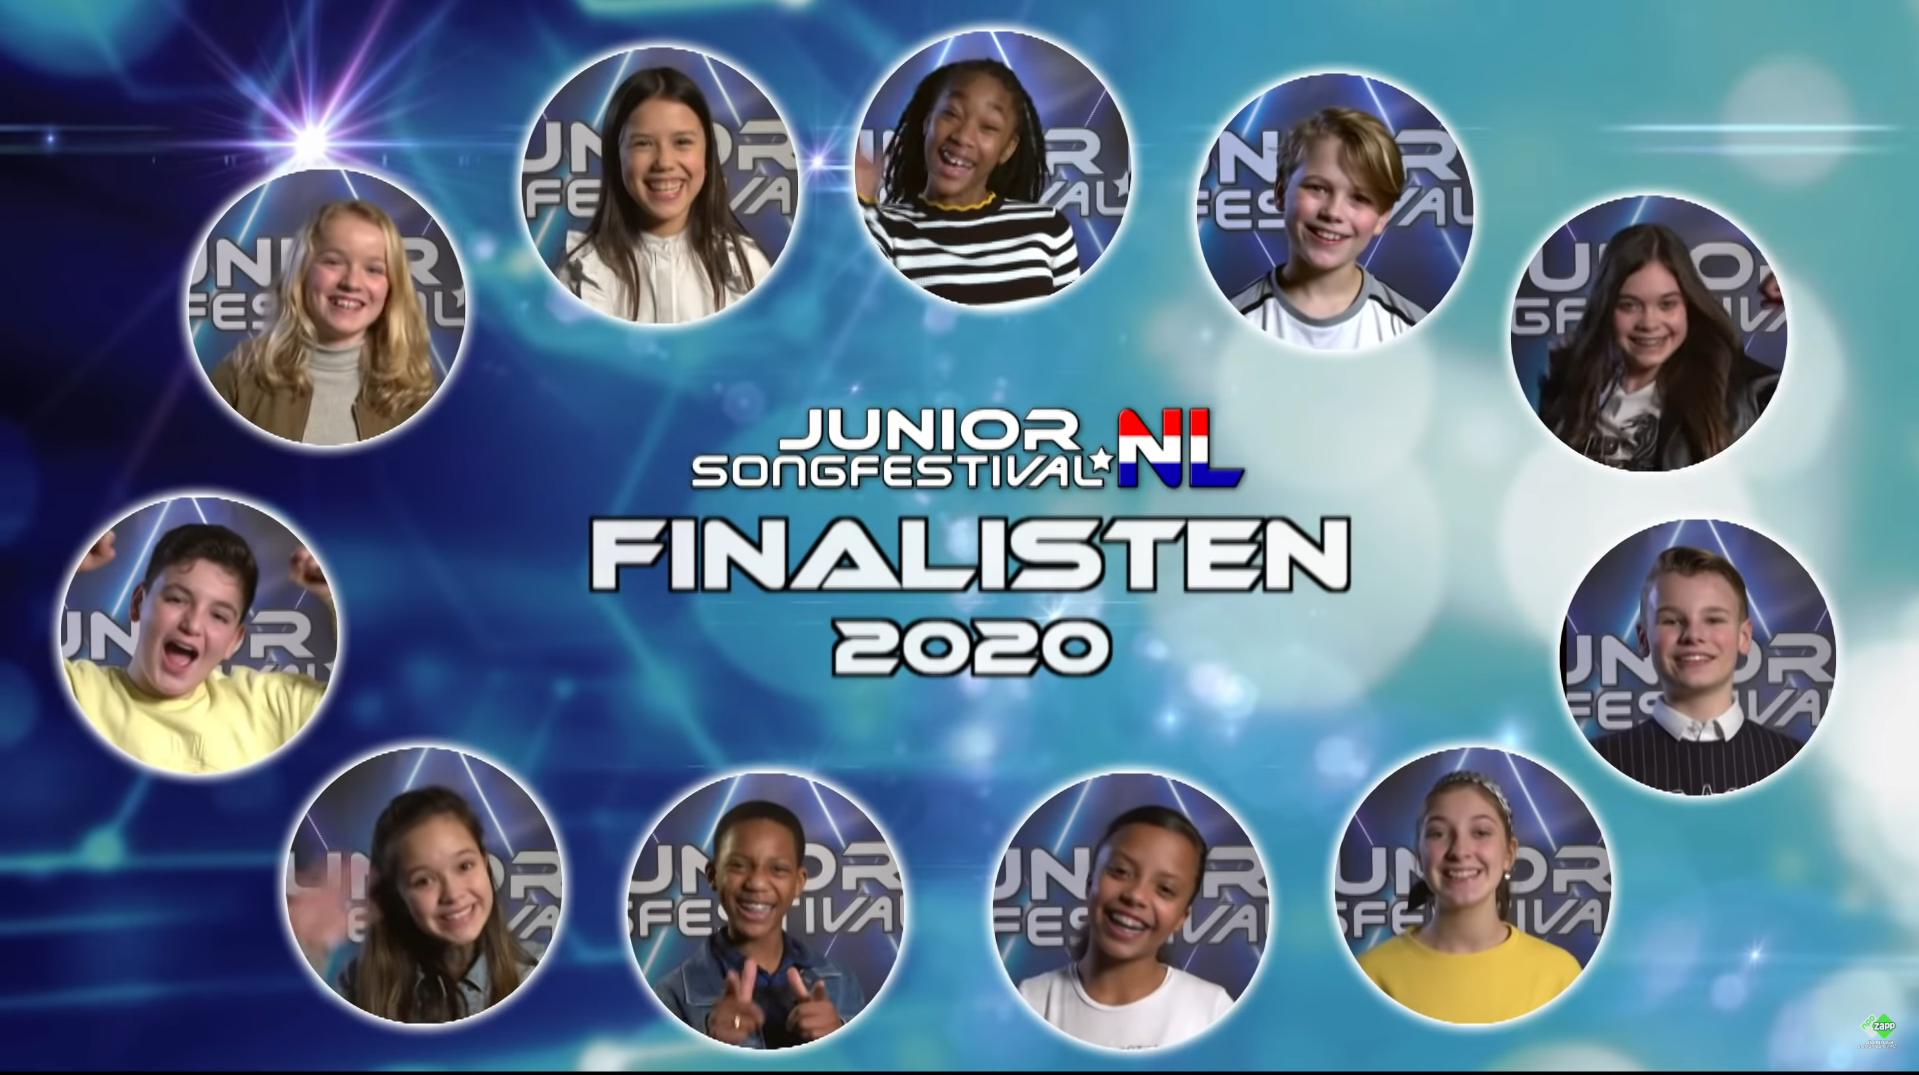 Junior Eurovision: 2020 Dutch finalists announced